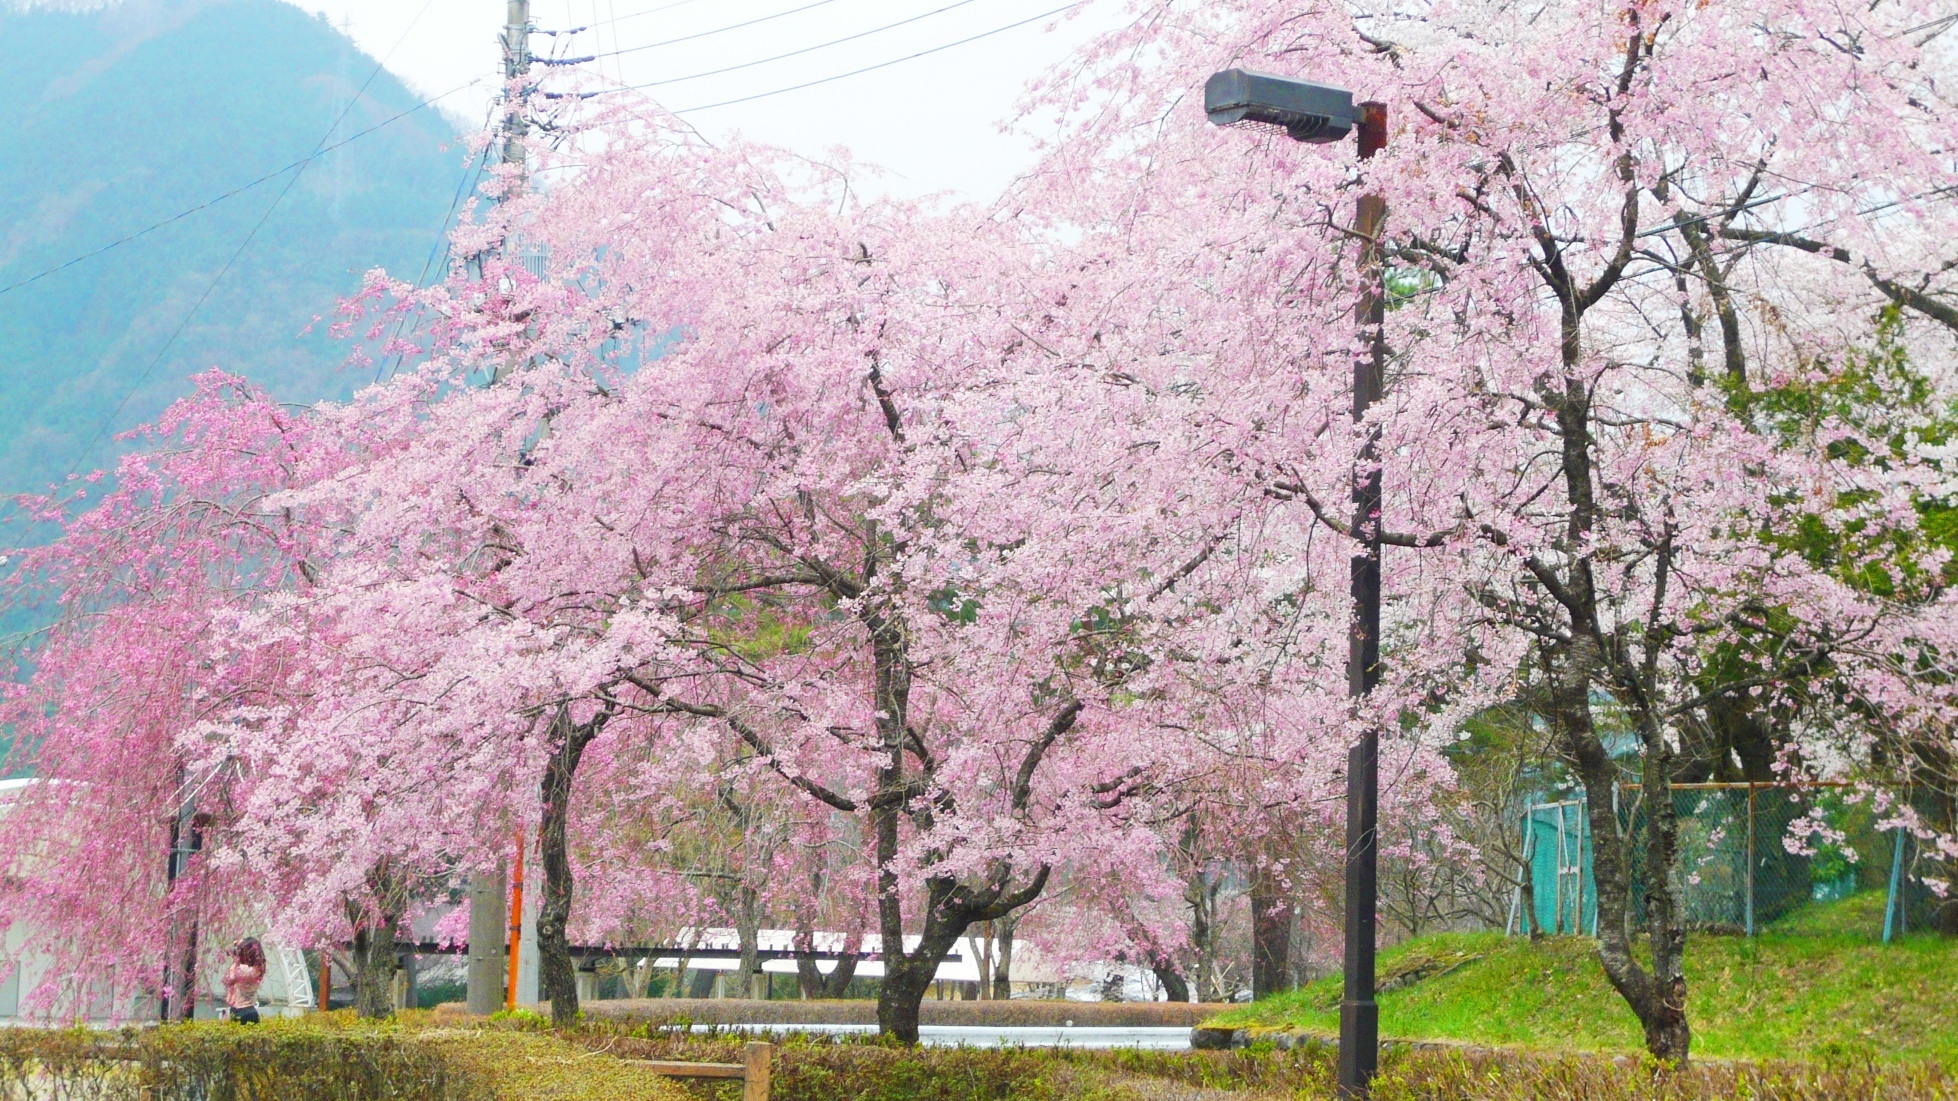  【春】鬼怒川公園の桜。鬼怒川エリアでは4月中旬〜下旬が見ごろです